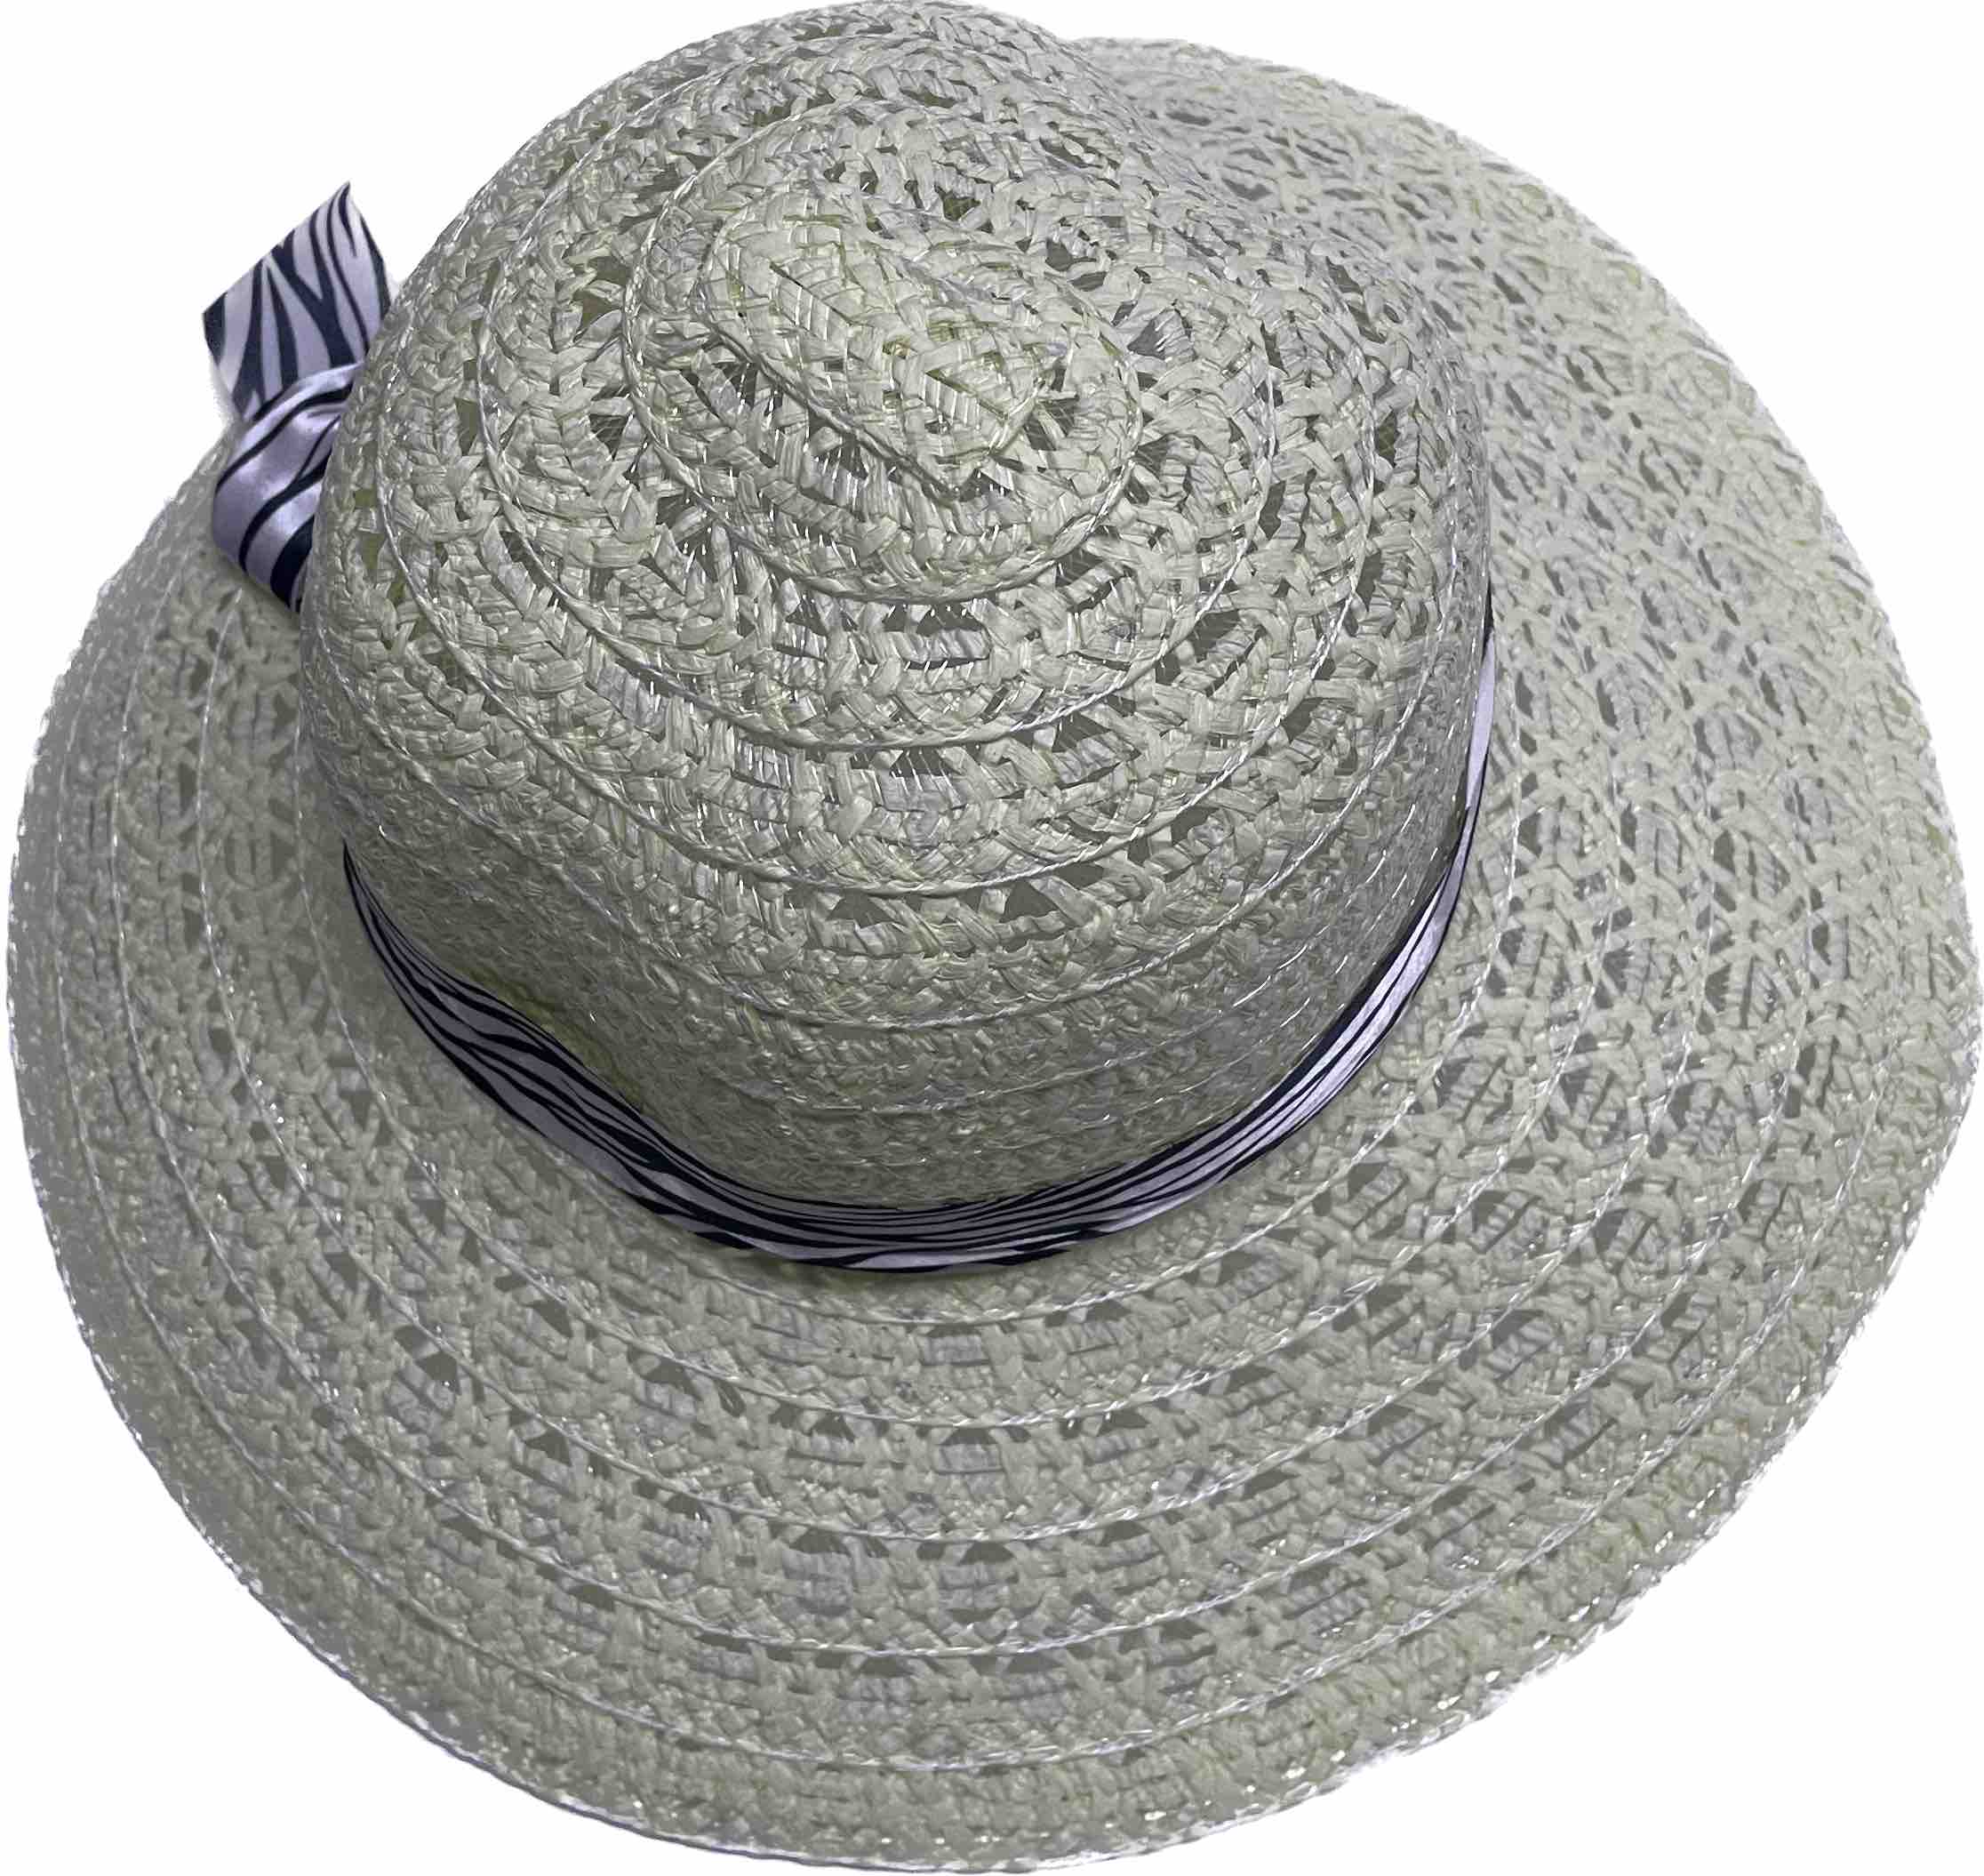 Καπέλο γυναικείο ψαθάκι no Κ 2015